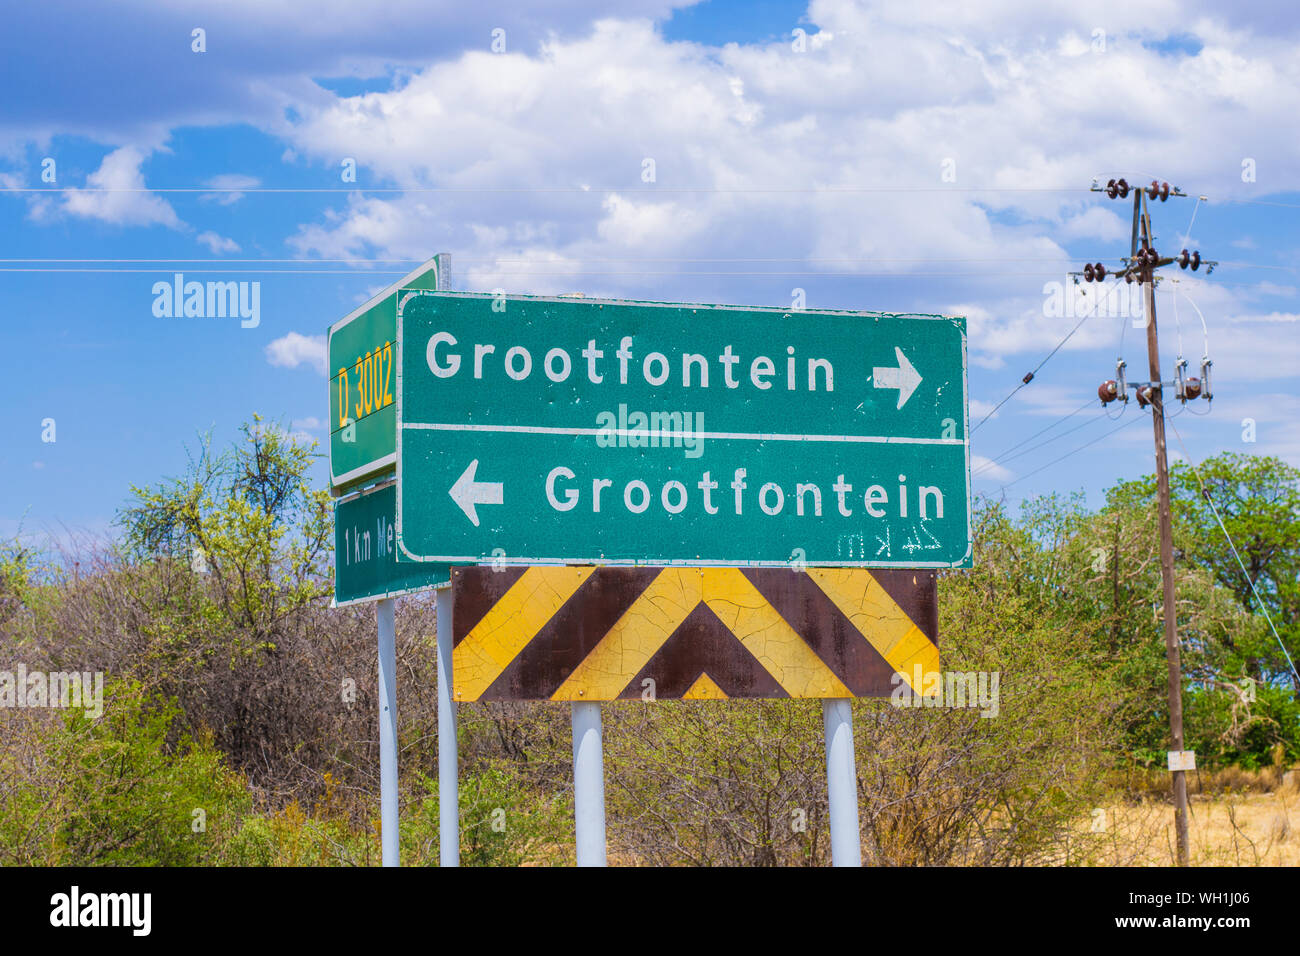 Grootfontein, Namibia, Oktober 2012: Straße Richtung Zeichen nach Grootfontein, zeigen in zwei verschiedene Richtungen. Stockfoto